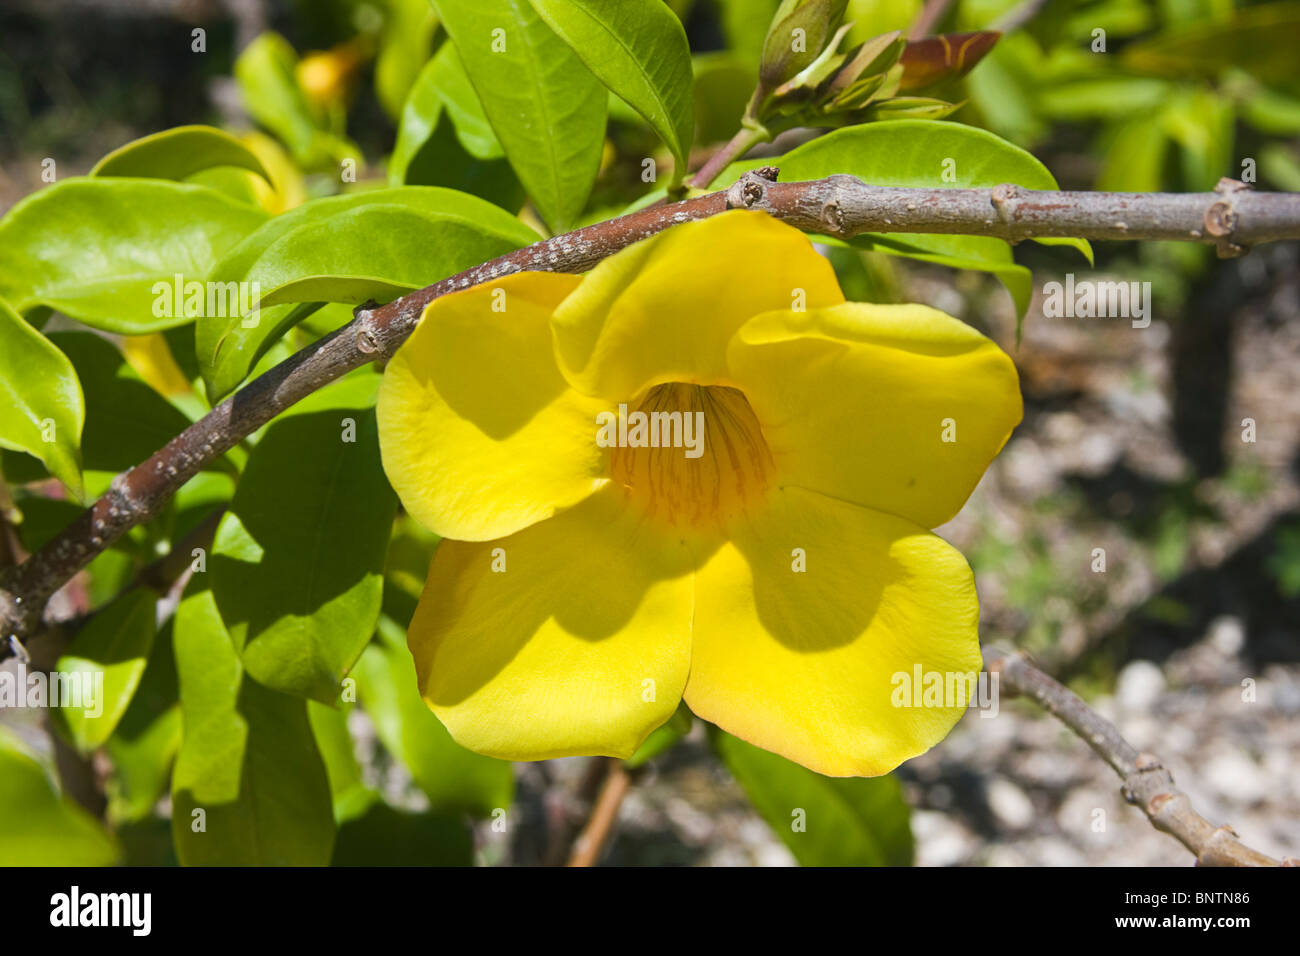 Golden trumpet flower (Allamanda cathartica) growing on the Yucatan Peninsula, Mexico. Stock Photo